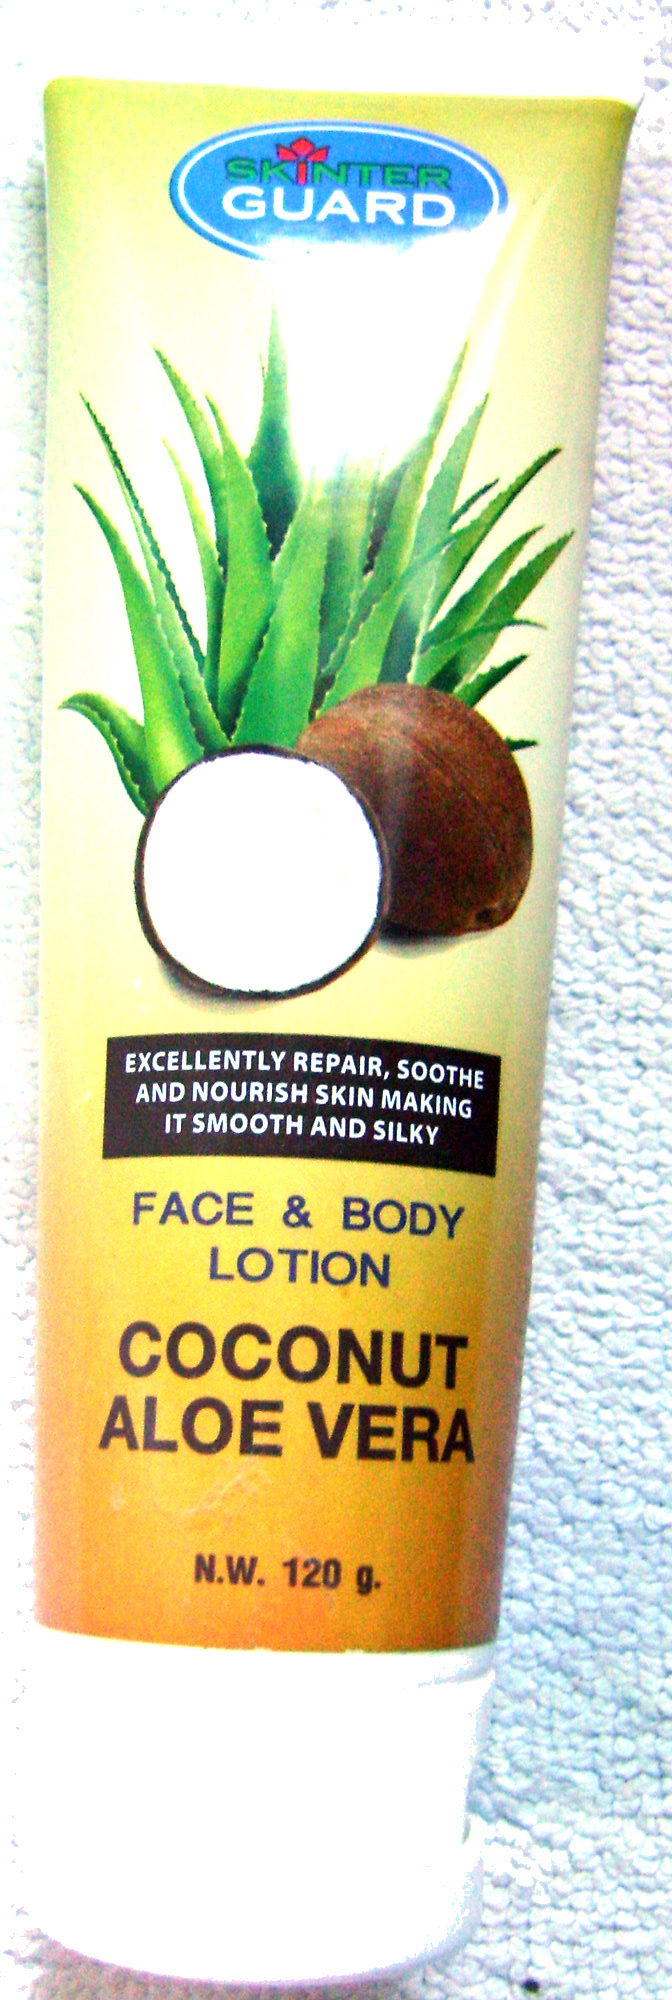 Face & body lotion Coconut Aloe Vera - Product - fr